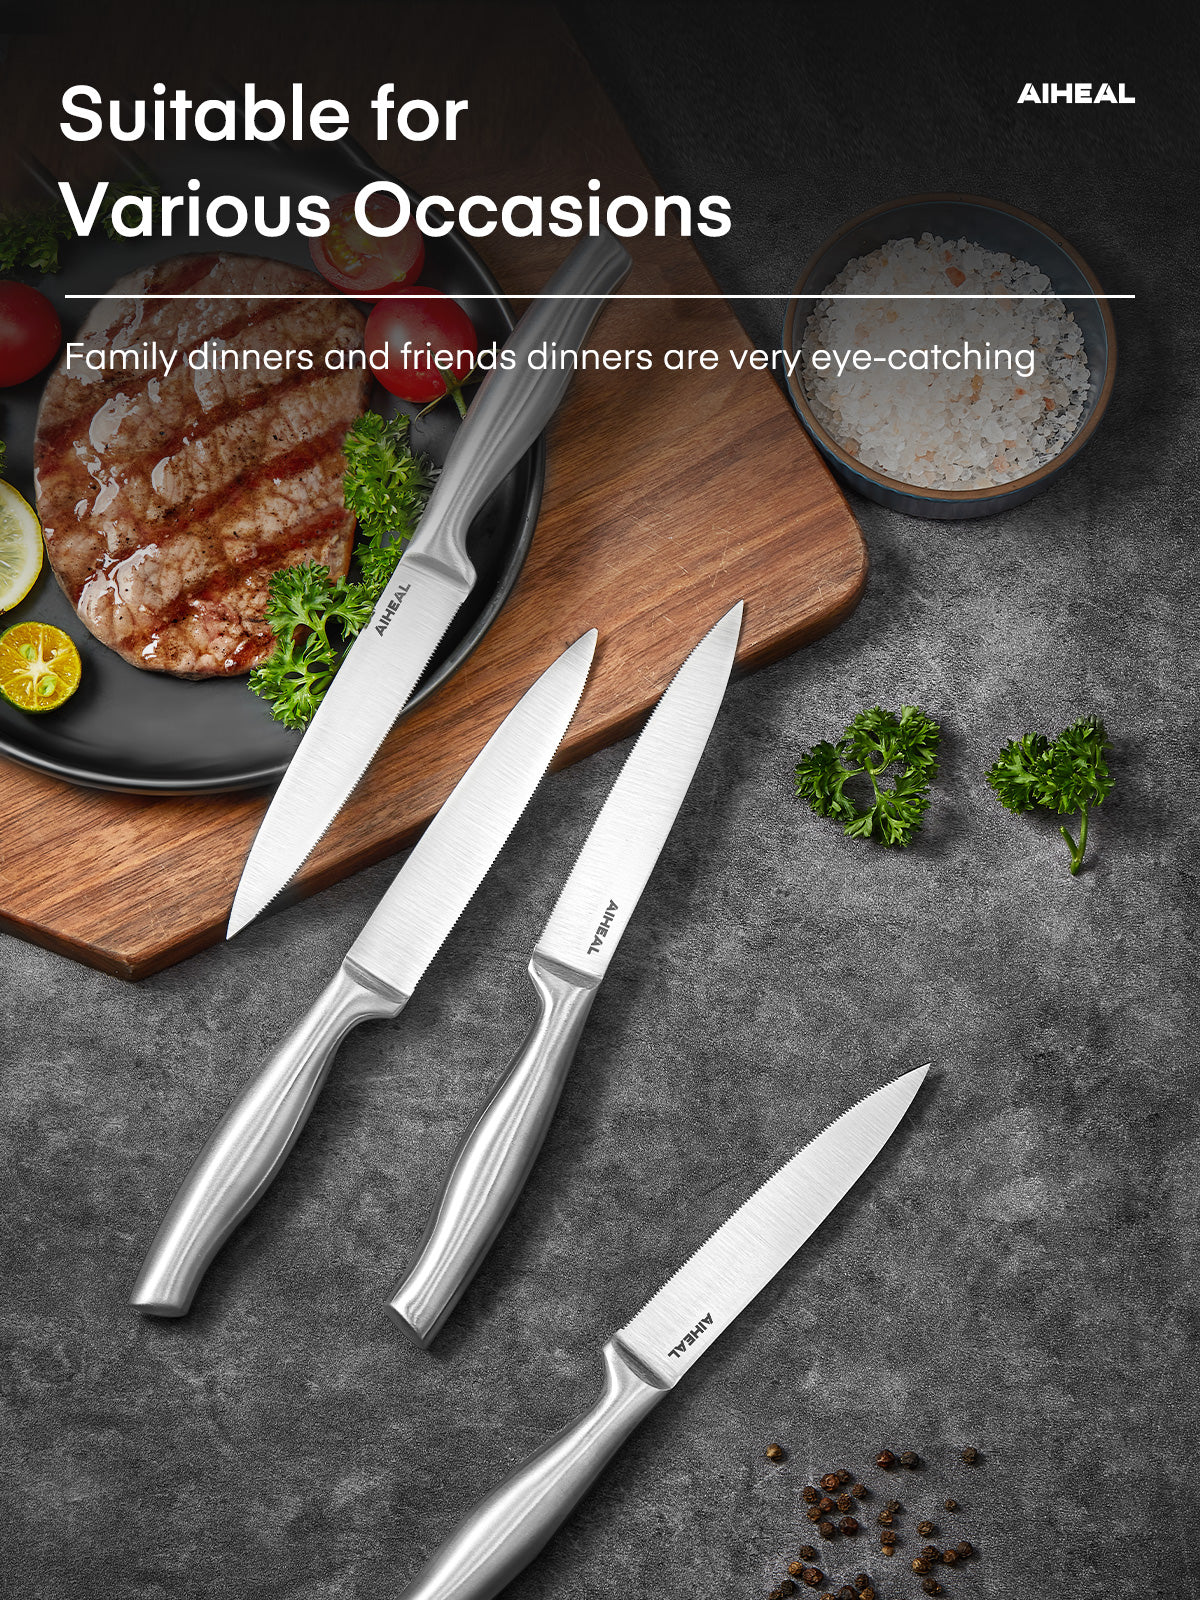 Aiheal Serrated Steak Knife Set, Stainless Steel Steak Knives Set of 8, Never Needs Sharpening Dinner Knives, Micro Serrated Steak Knives with Gift Box